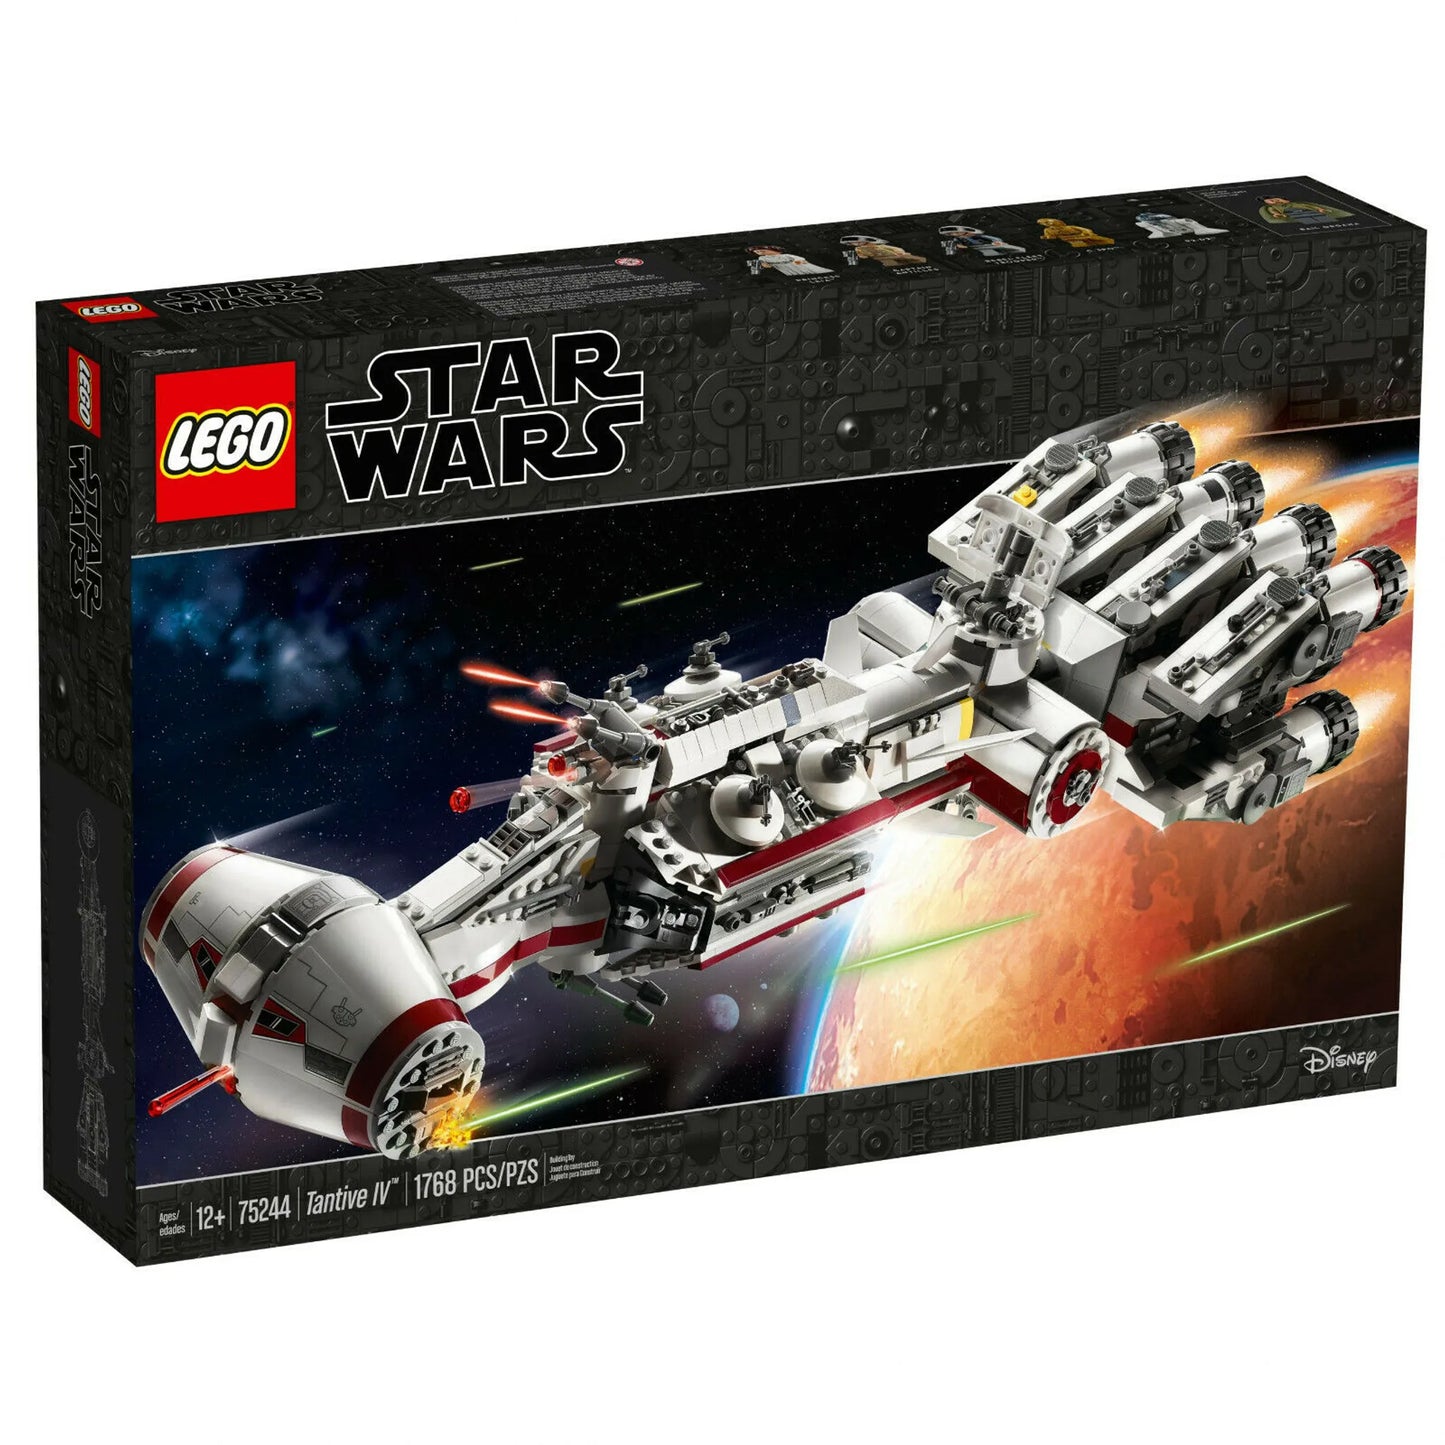 LEGO® EOL Star Wars 75244 Tantive IV